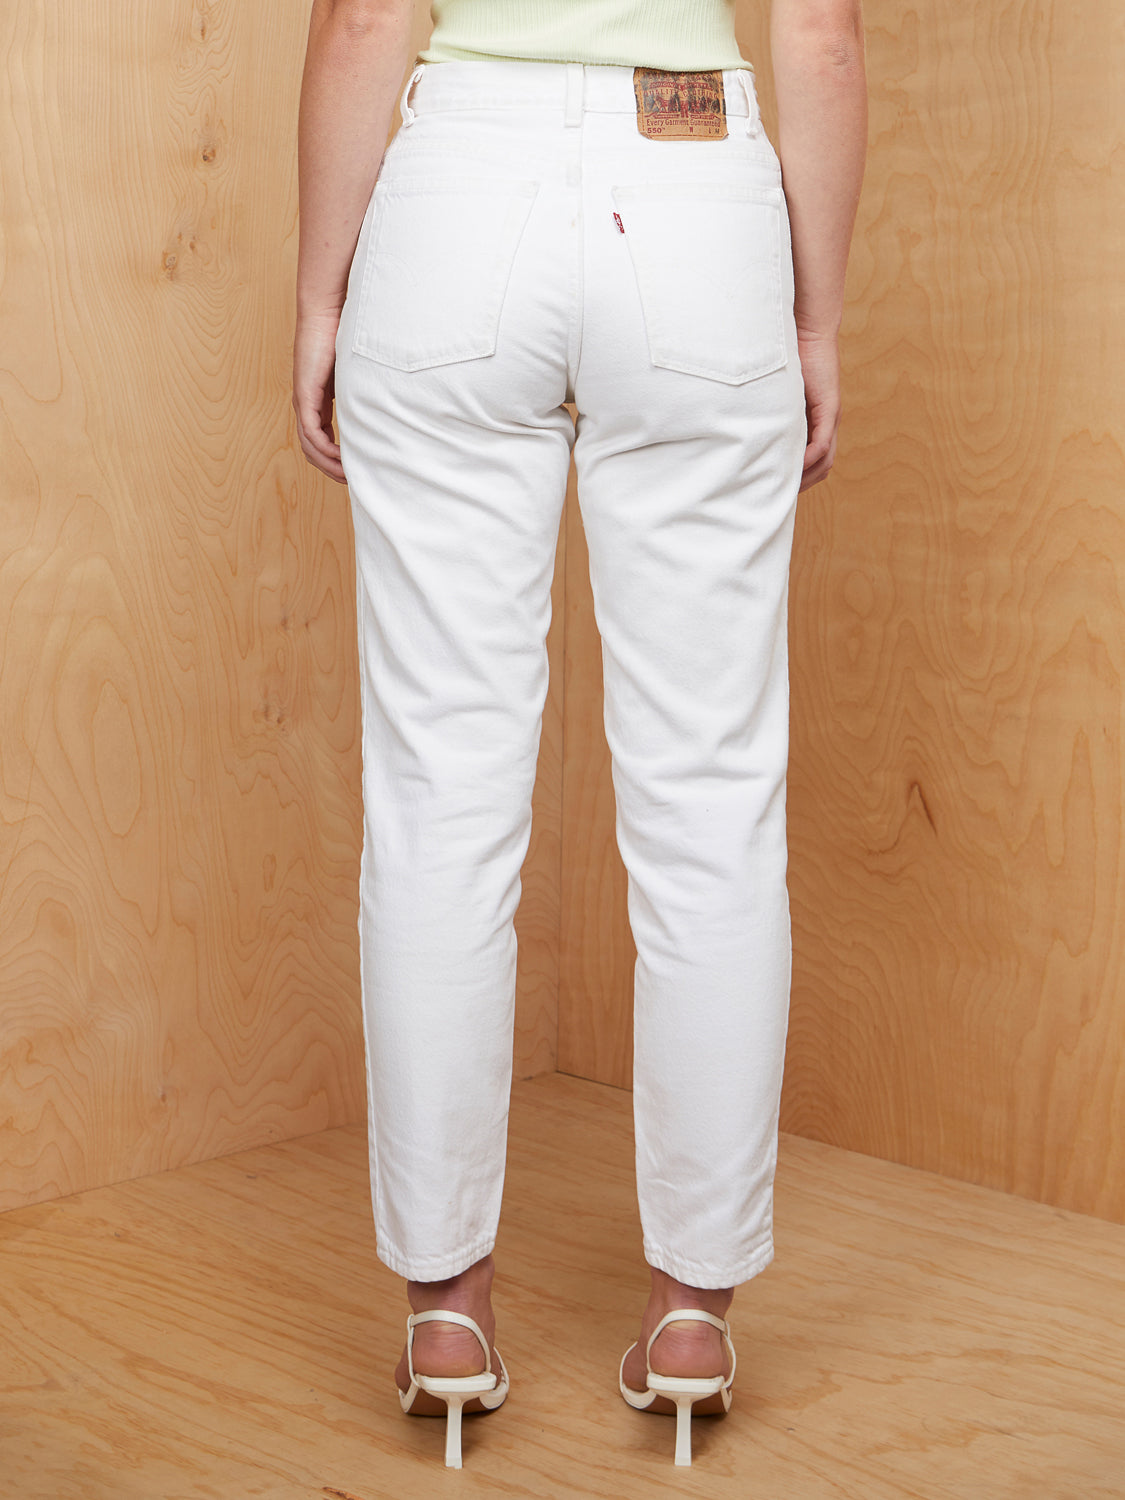 Vintage White 550 Levi's Jeans